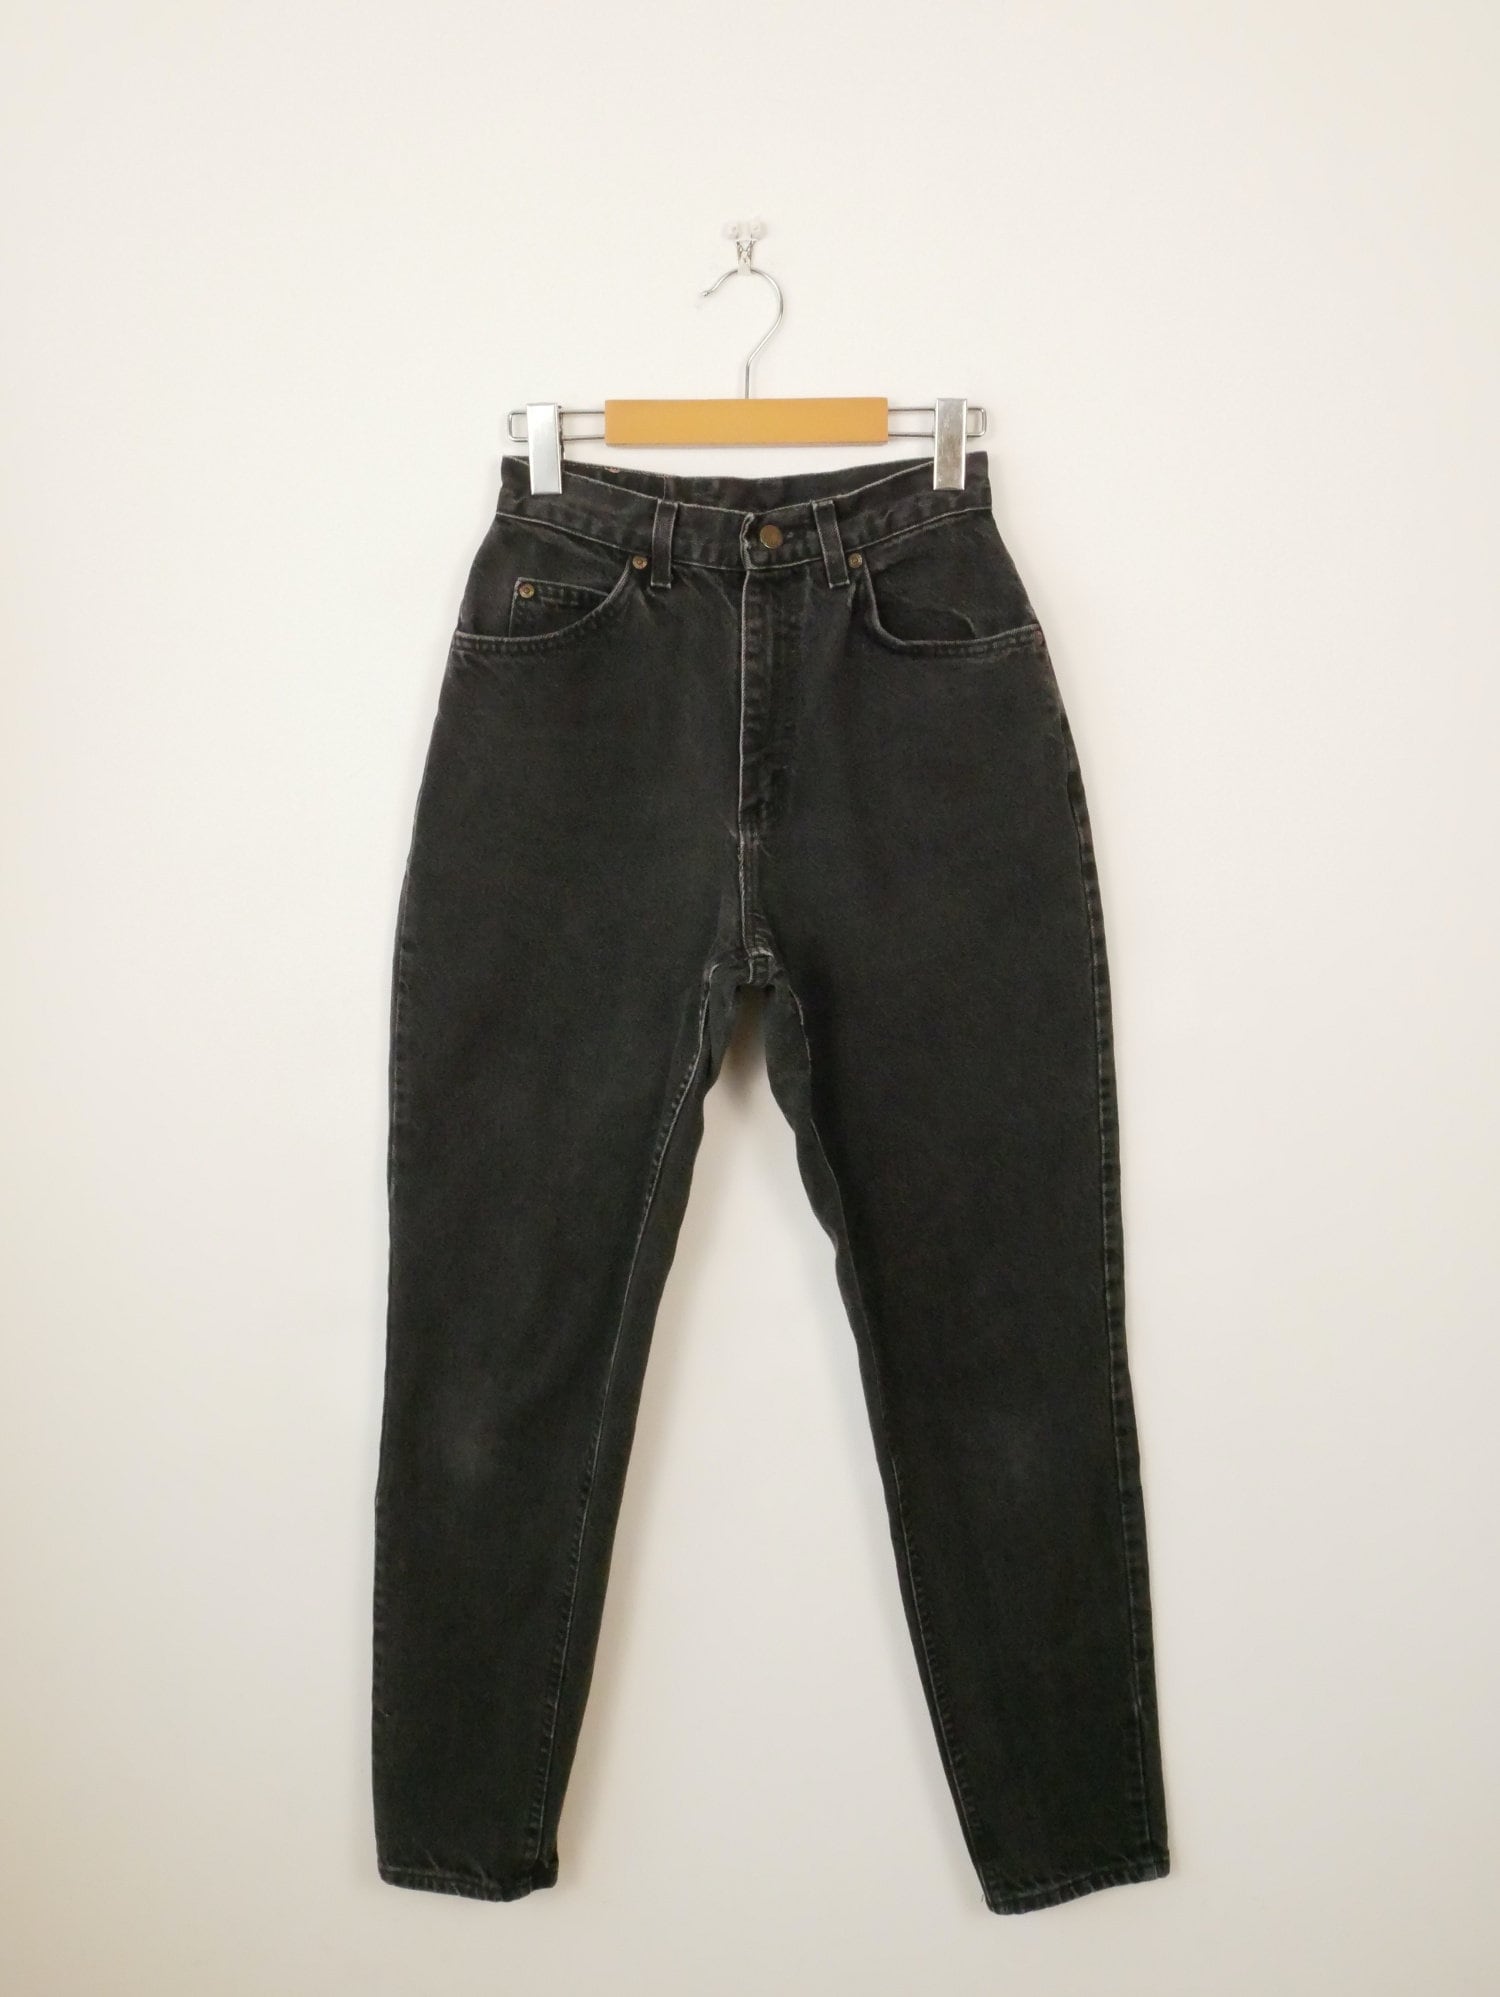 1970s High Waist Jeans 28 to 29 Waist Cropped Dark Indigo Blue Relaxed  Bianca Nygard Vintage Denim 80s Dark Wash Mom Jeans -  Canada